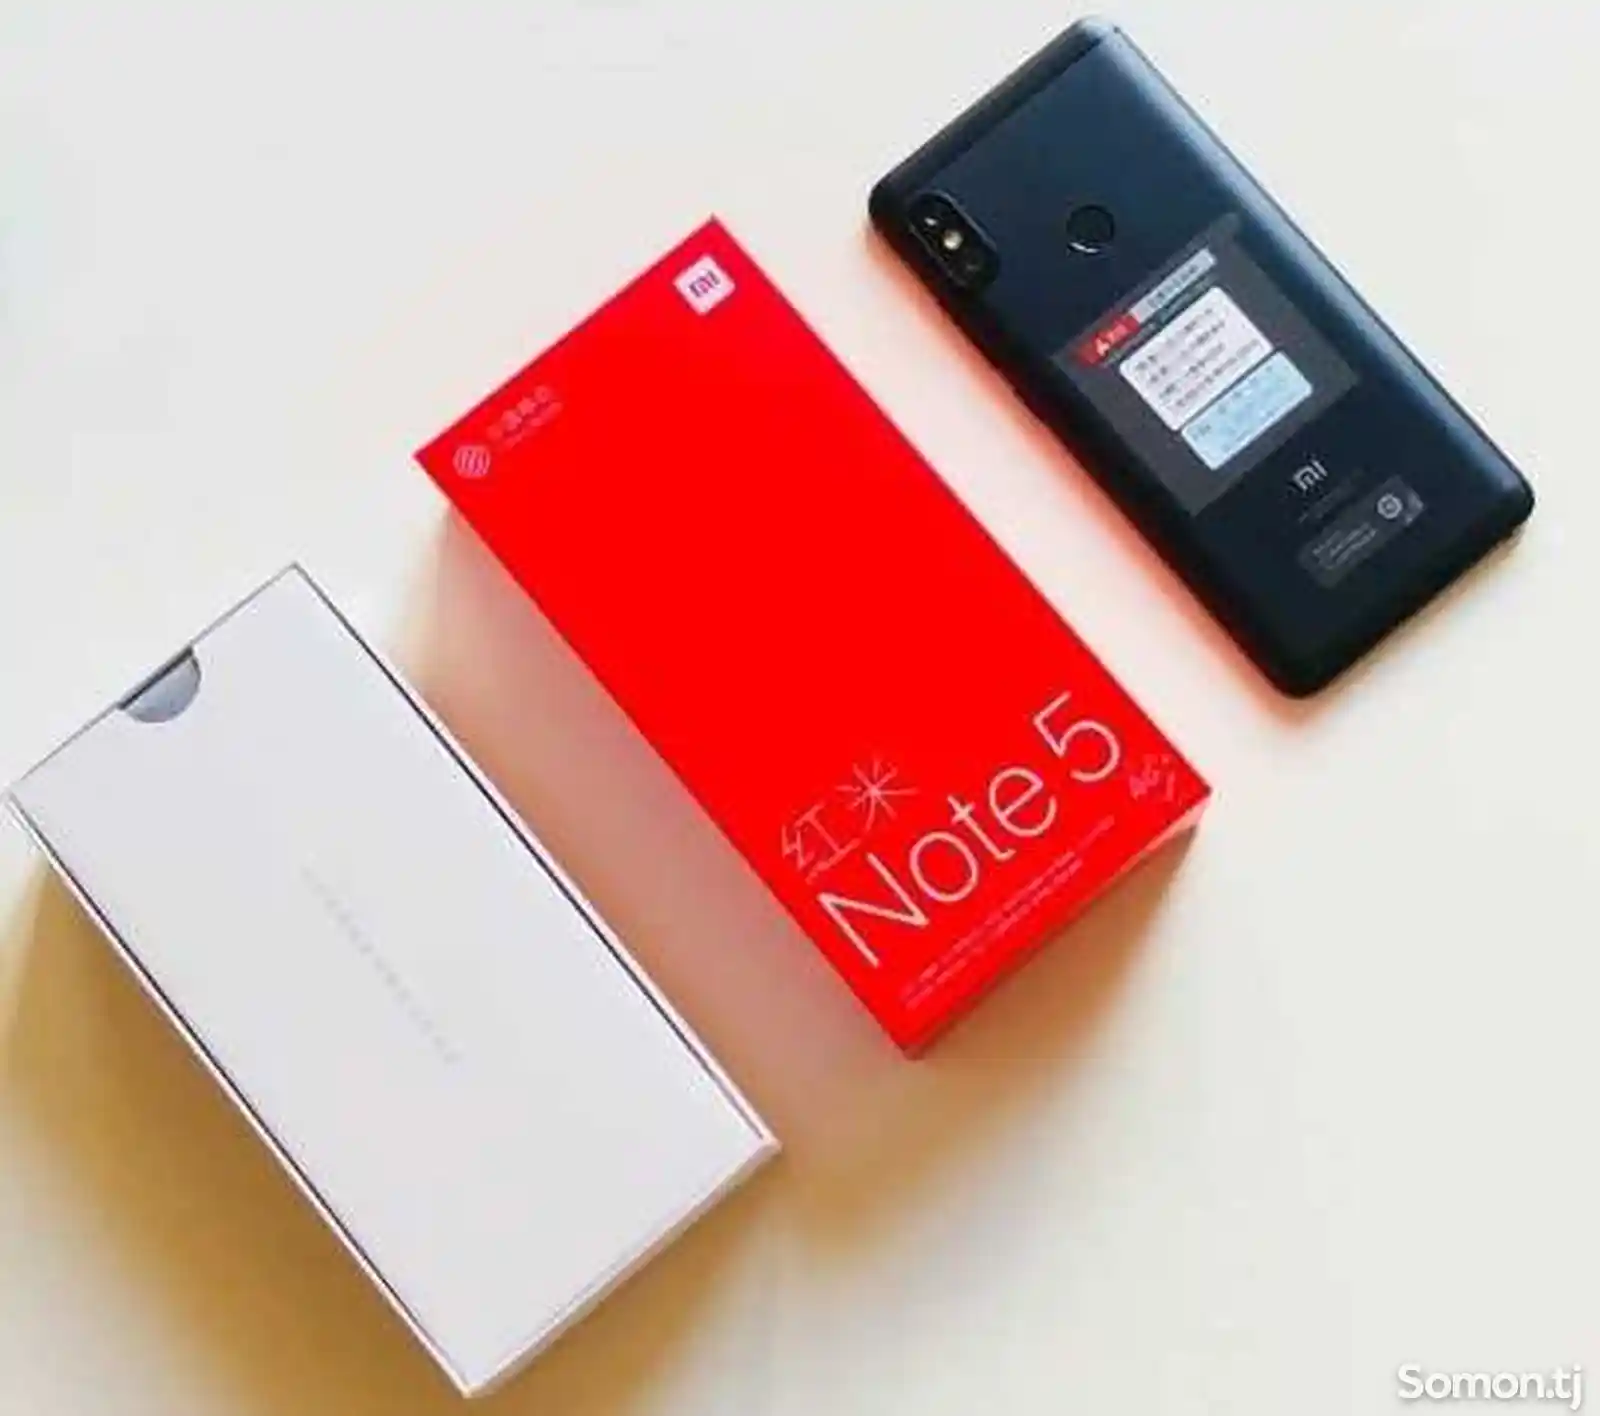 Xiaomi Redmi Note 5 32gb